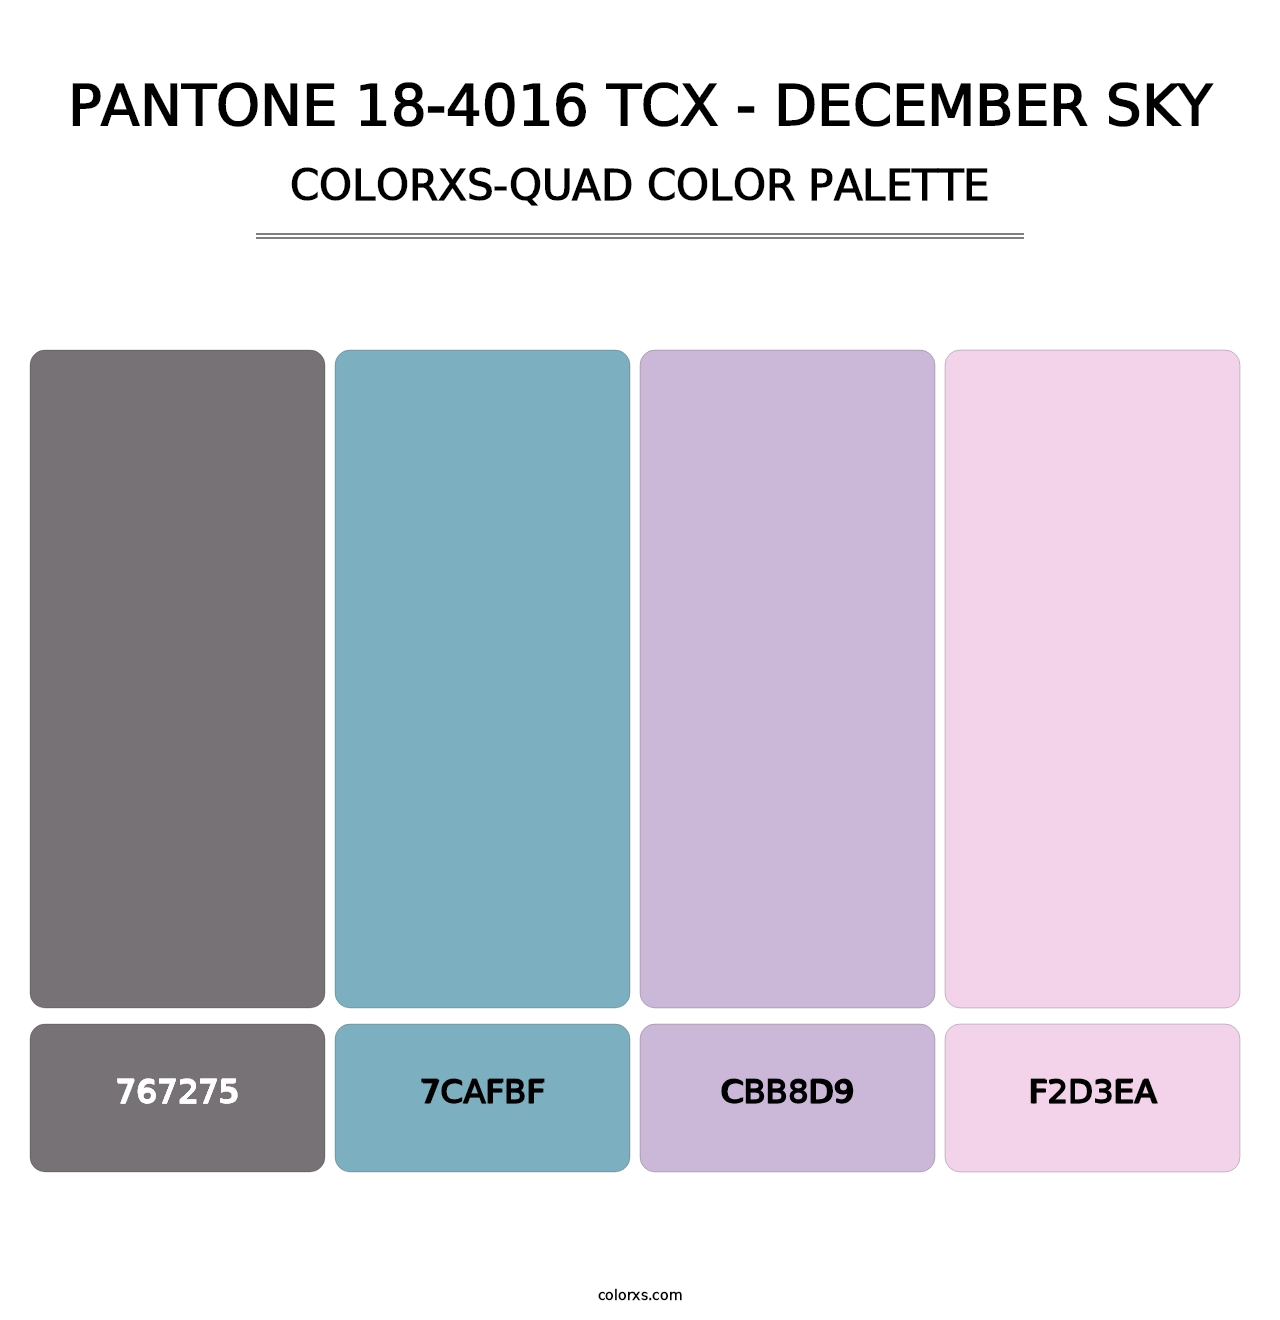 PANTONE 18-4016 TCX - December Sky - Colorxs Quad Palette